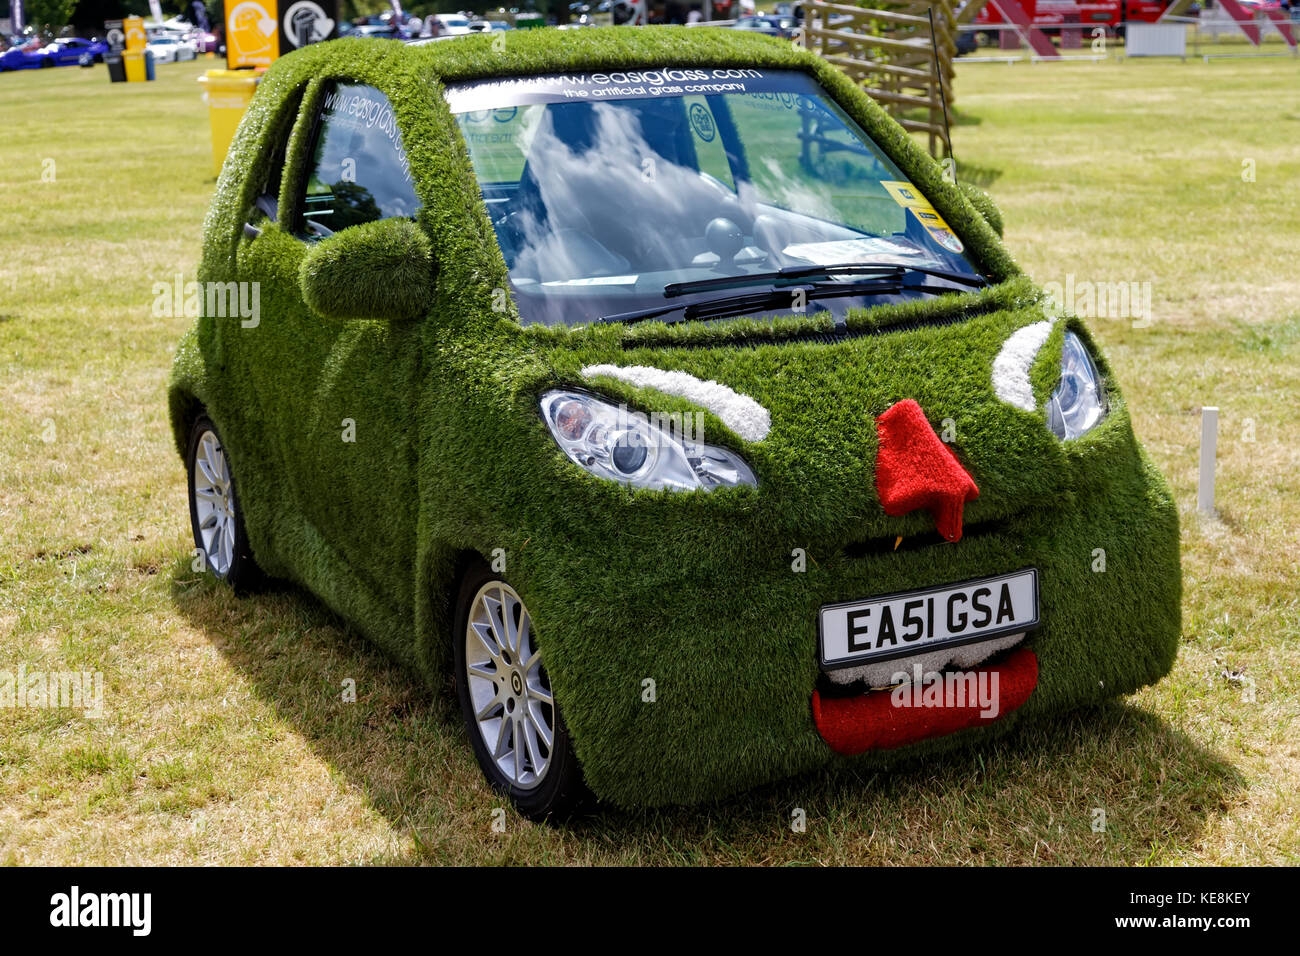 Une voiture recouverte d'herbe artificielle lors de la Wilton Classic & Supercar Day, Wilton House, Wiltshire, Royaume-Uni, 2014 Banque D'Images